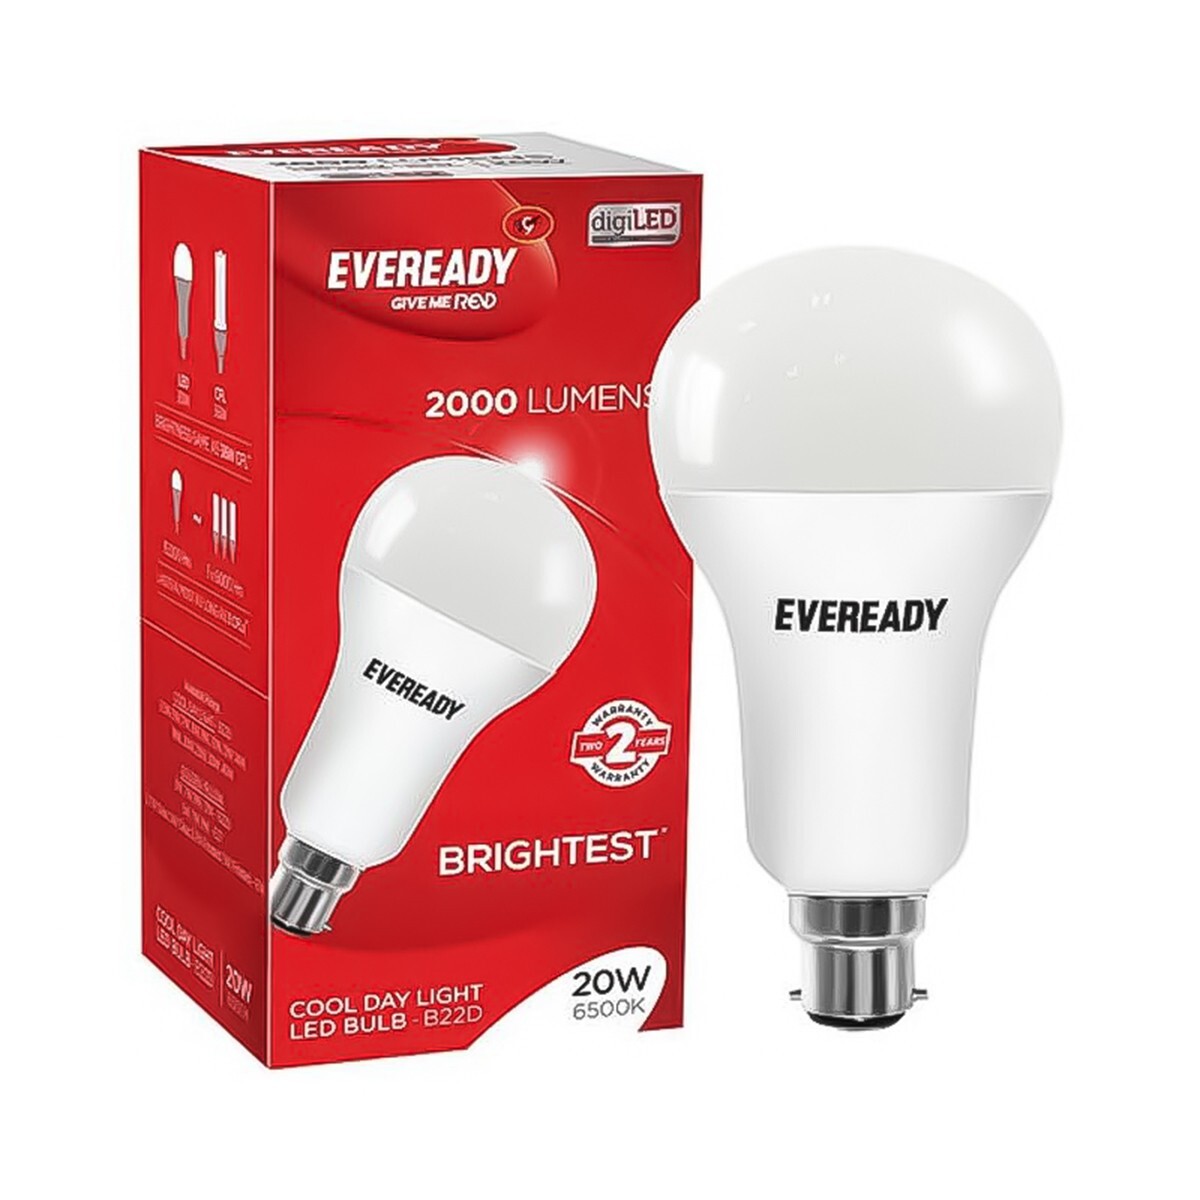 Eveready LED Bulb 20W